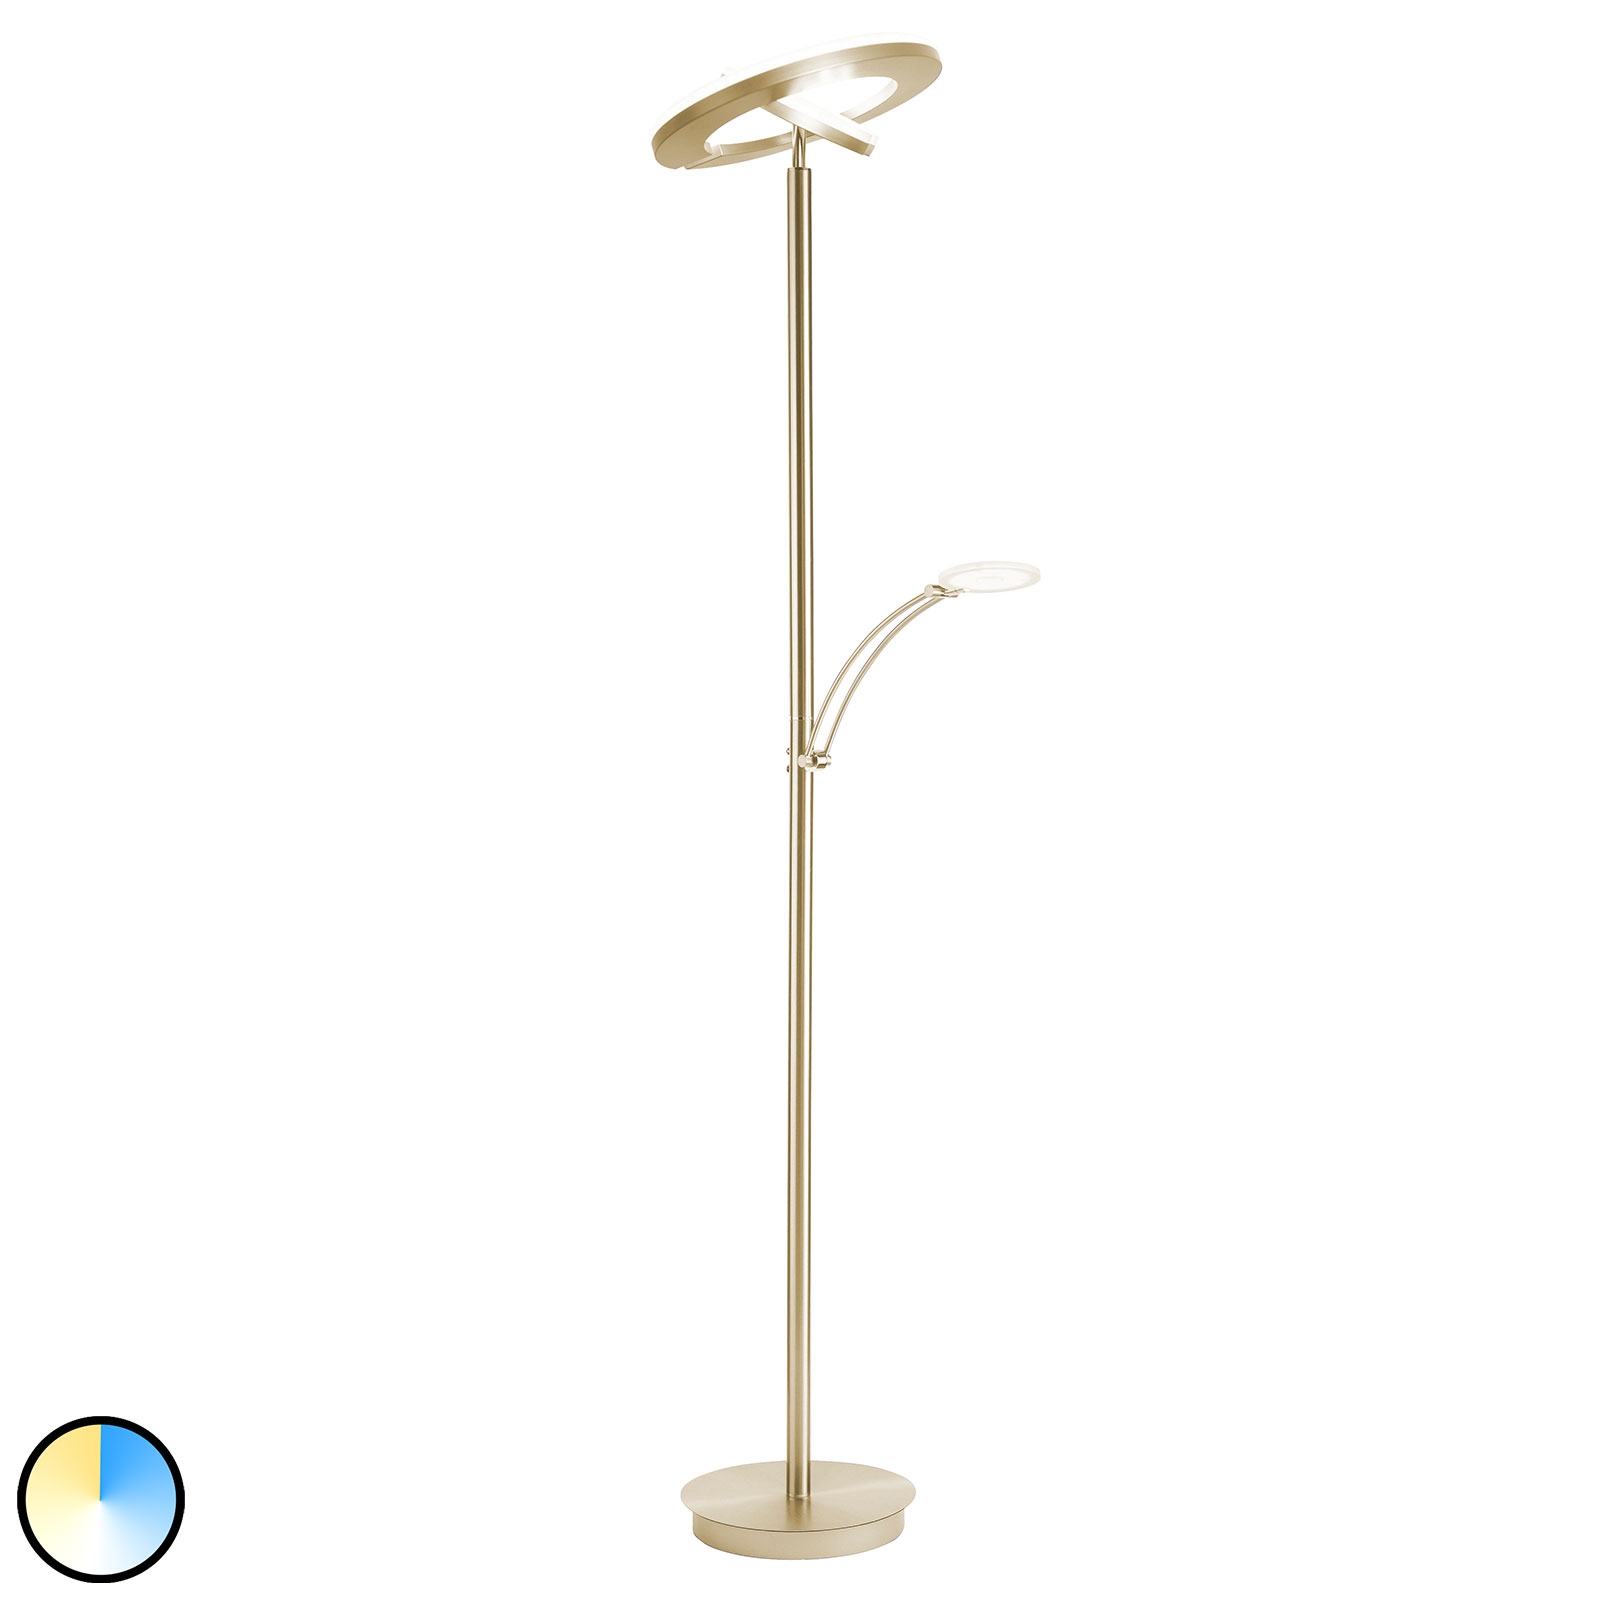 Paul Neuhaus Martin lampa LED oświetlająca mosiądz